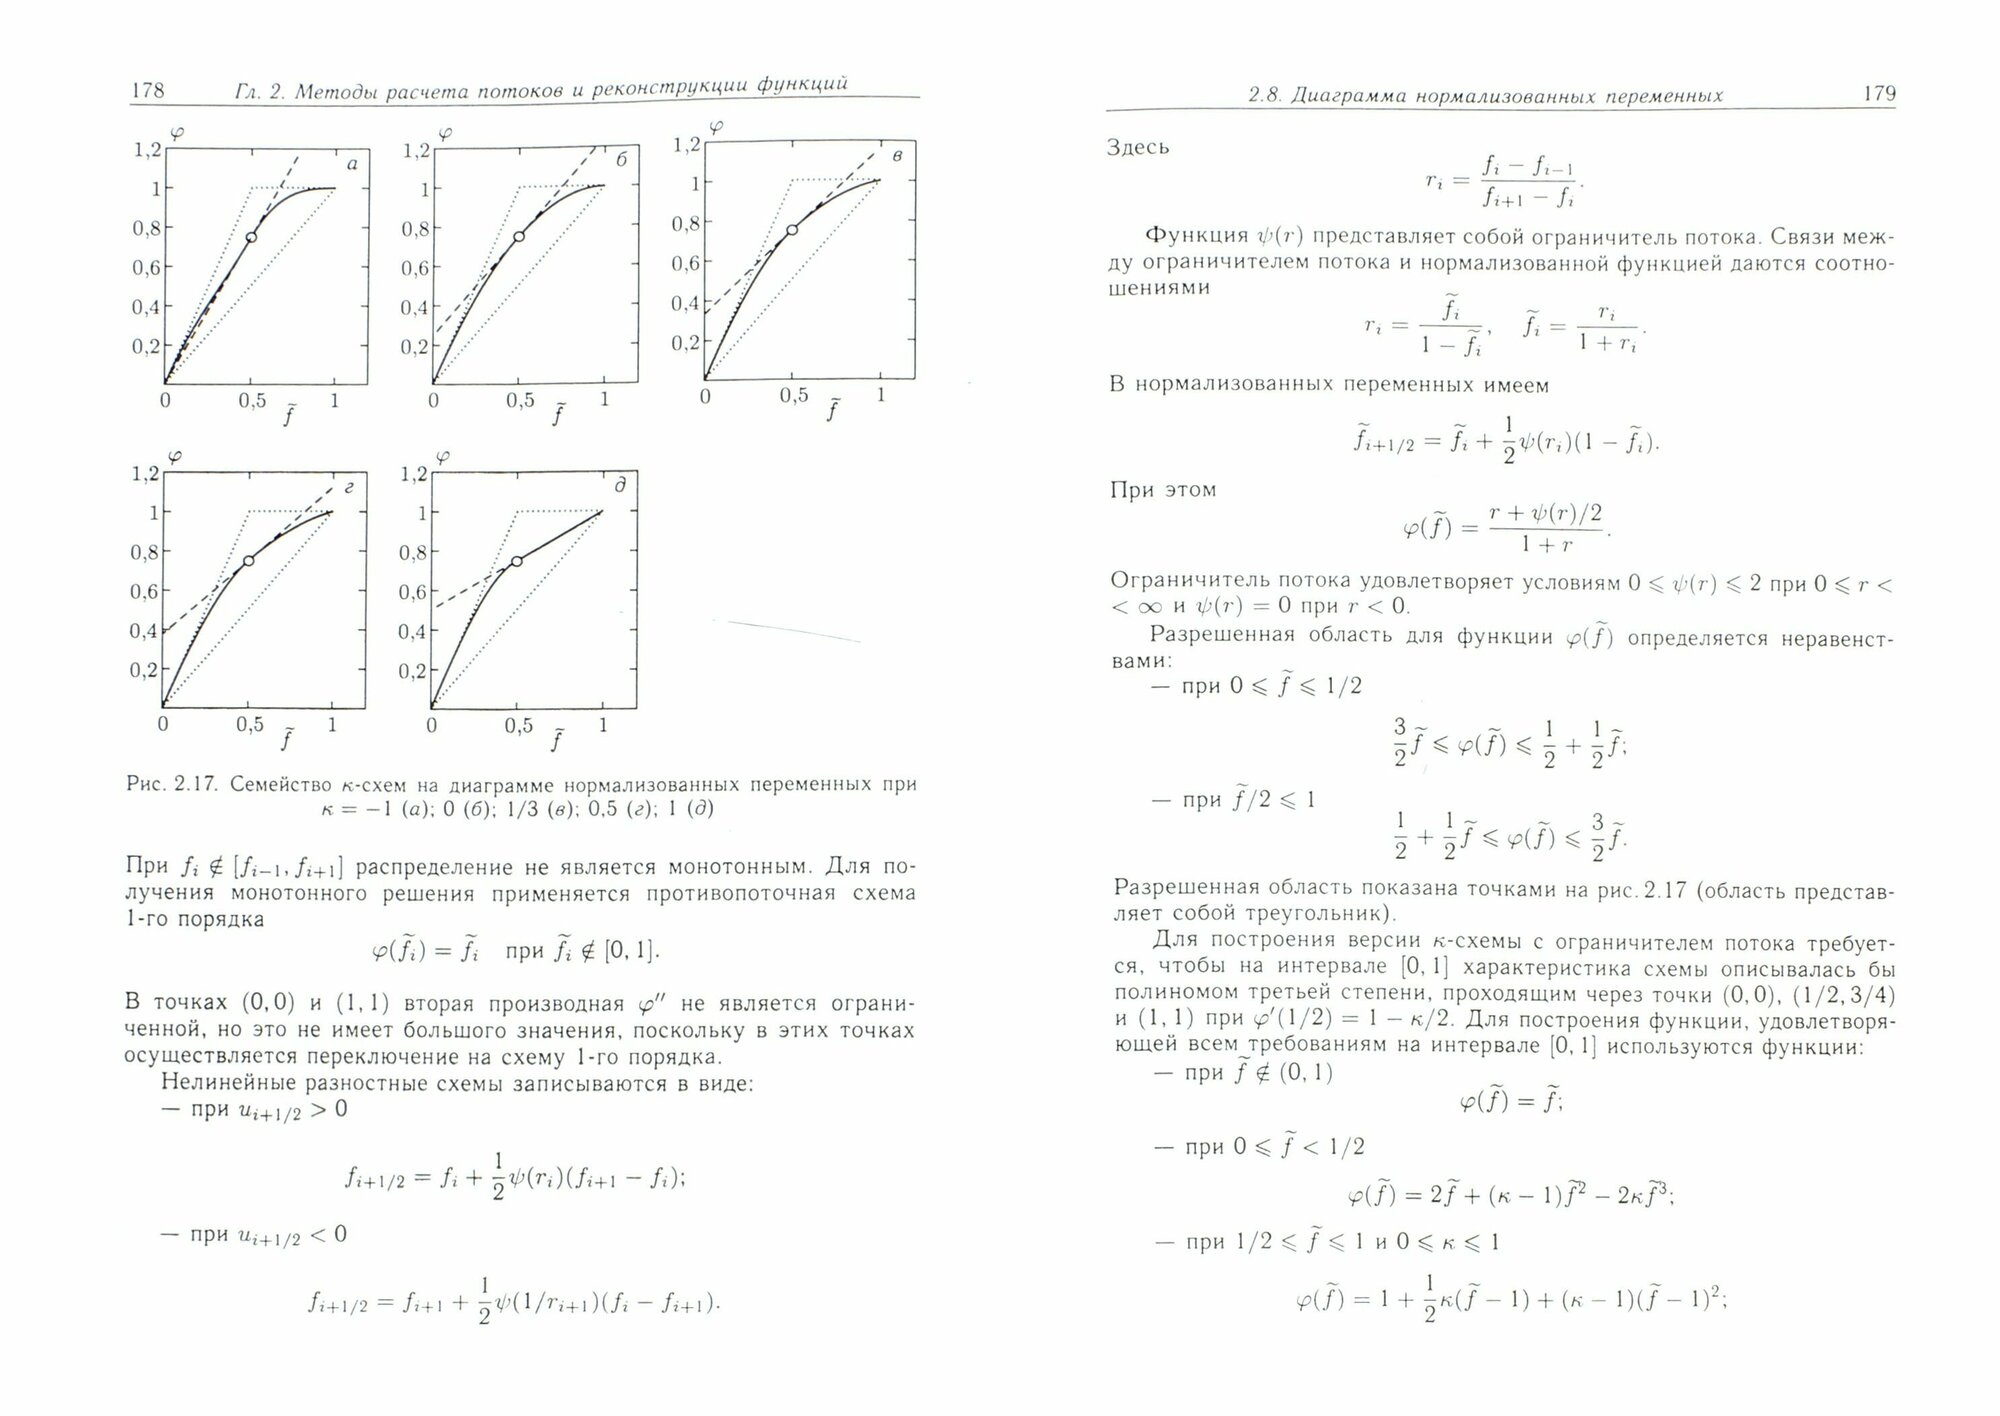 Разностные схемы в задачах газовой динамики на неструктурированных сетках - фото №2